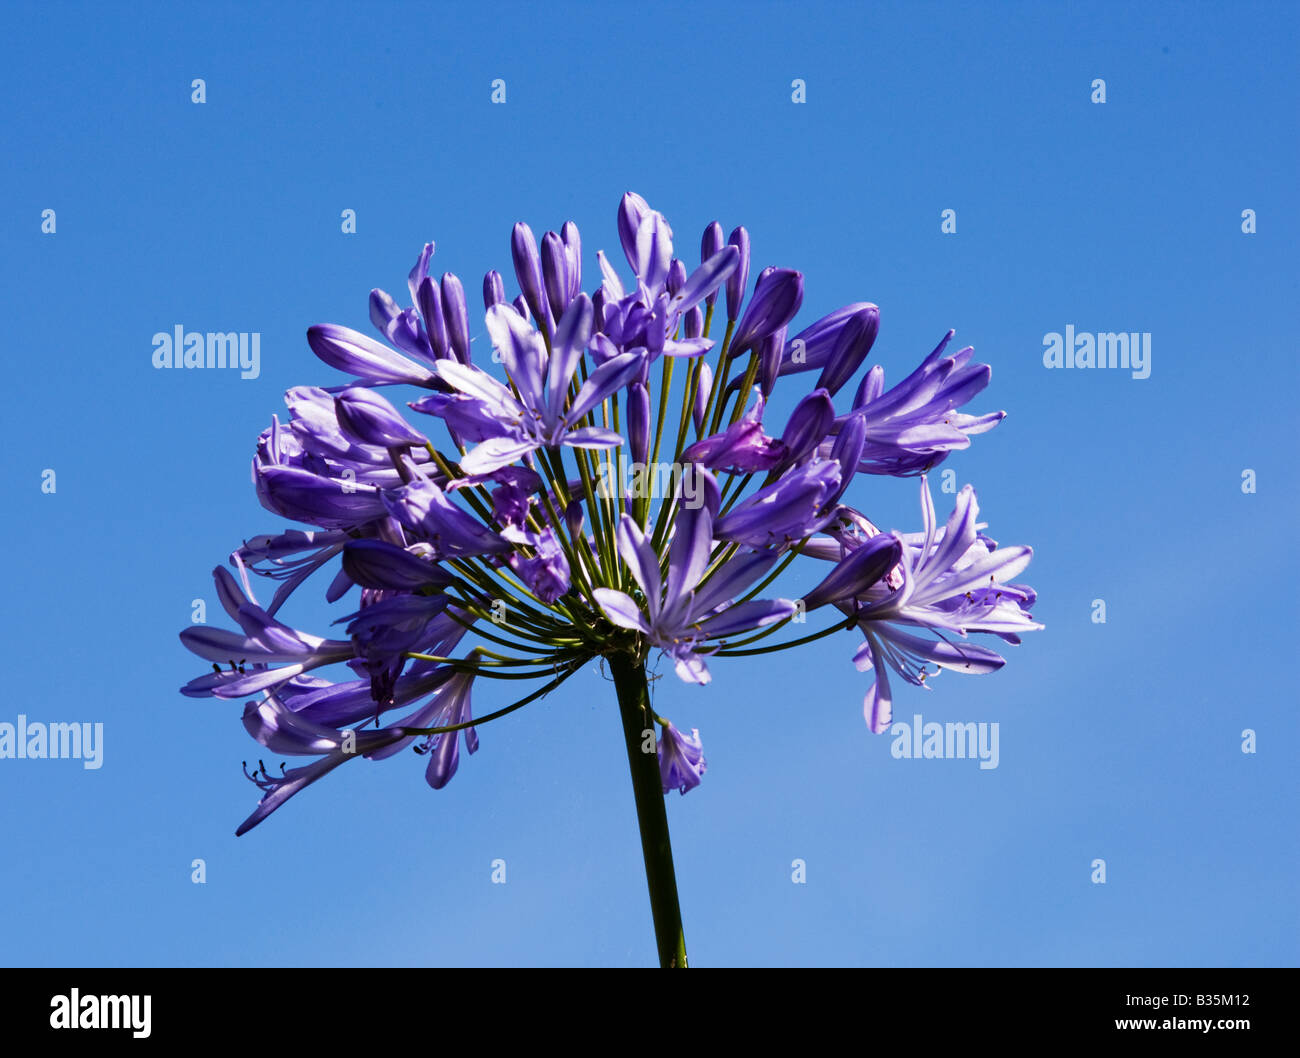 Agapanthus flower against blue sky Stock Photo